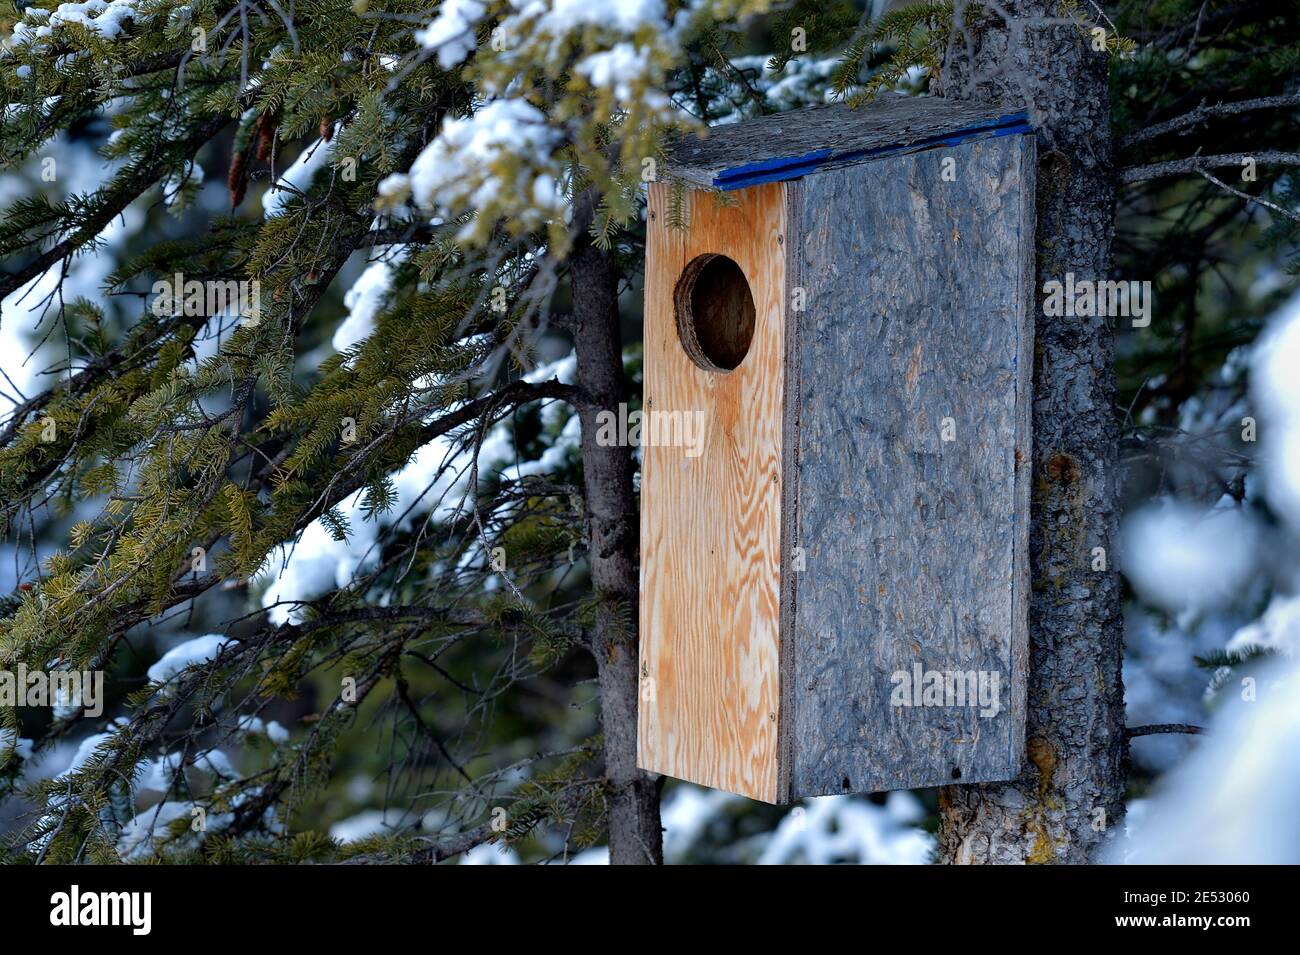 Una caja de nido de pato en un árbol de picea esperando la temporada de anidación migratoria de primavera en las zonas rurales de Alberta, Canadá. Foto de stock